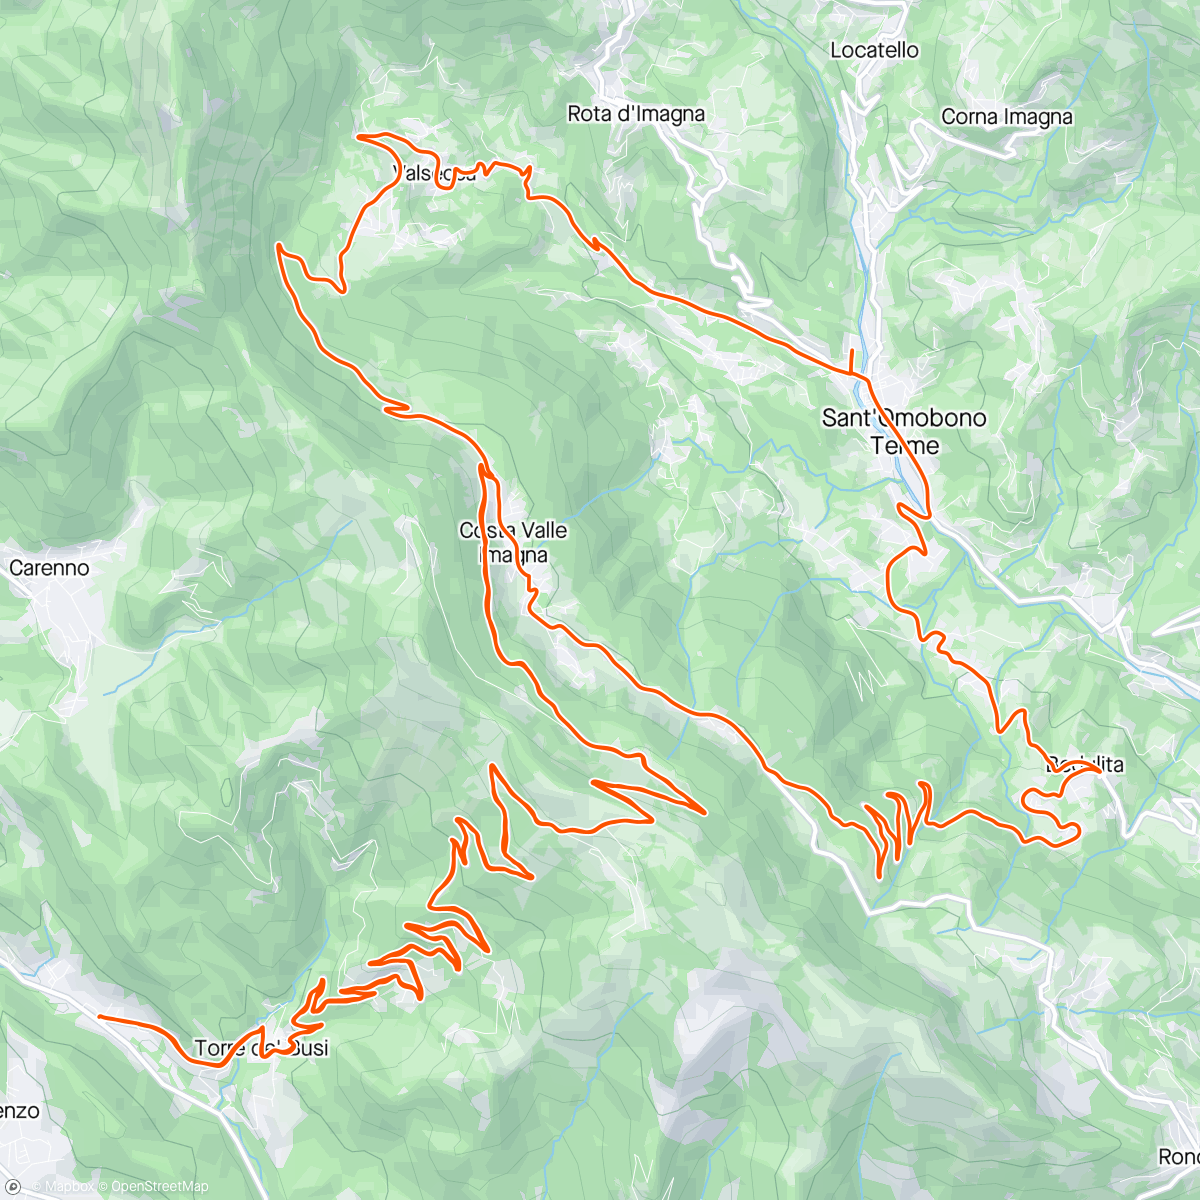 Map of the activity, Valcava bedulita con carretto ♥️♥️♥️♥️